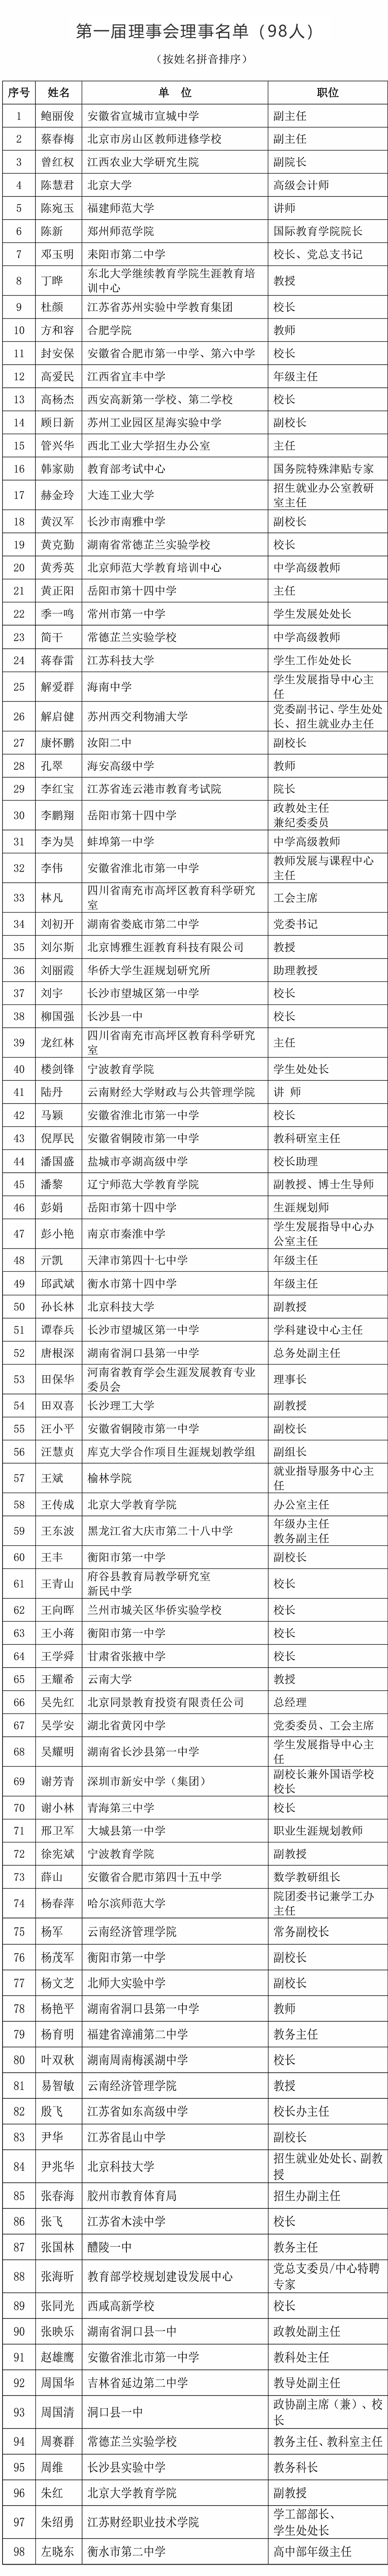 中国教育发展战略学会生涯教育专业委员会理事名单-6.jpg